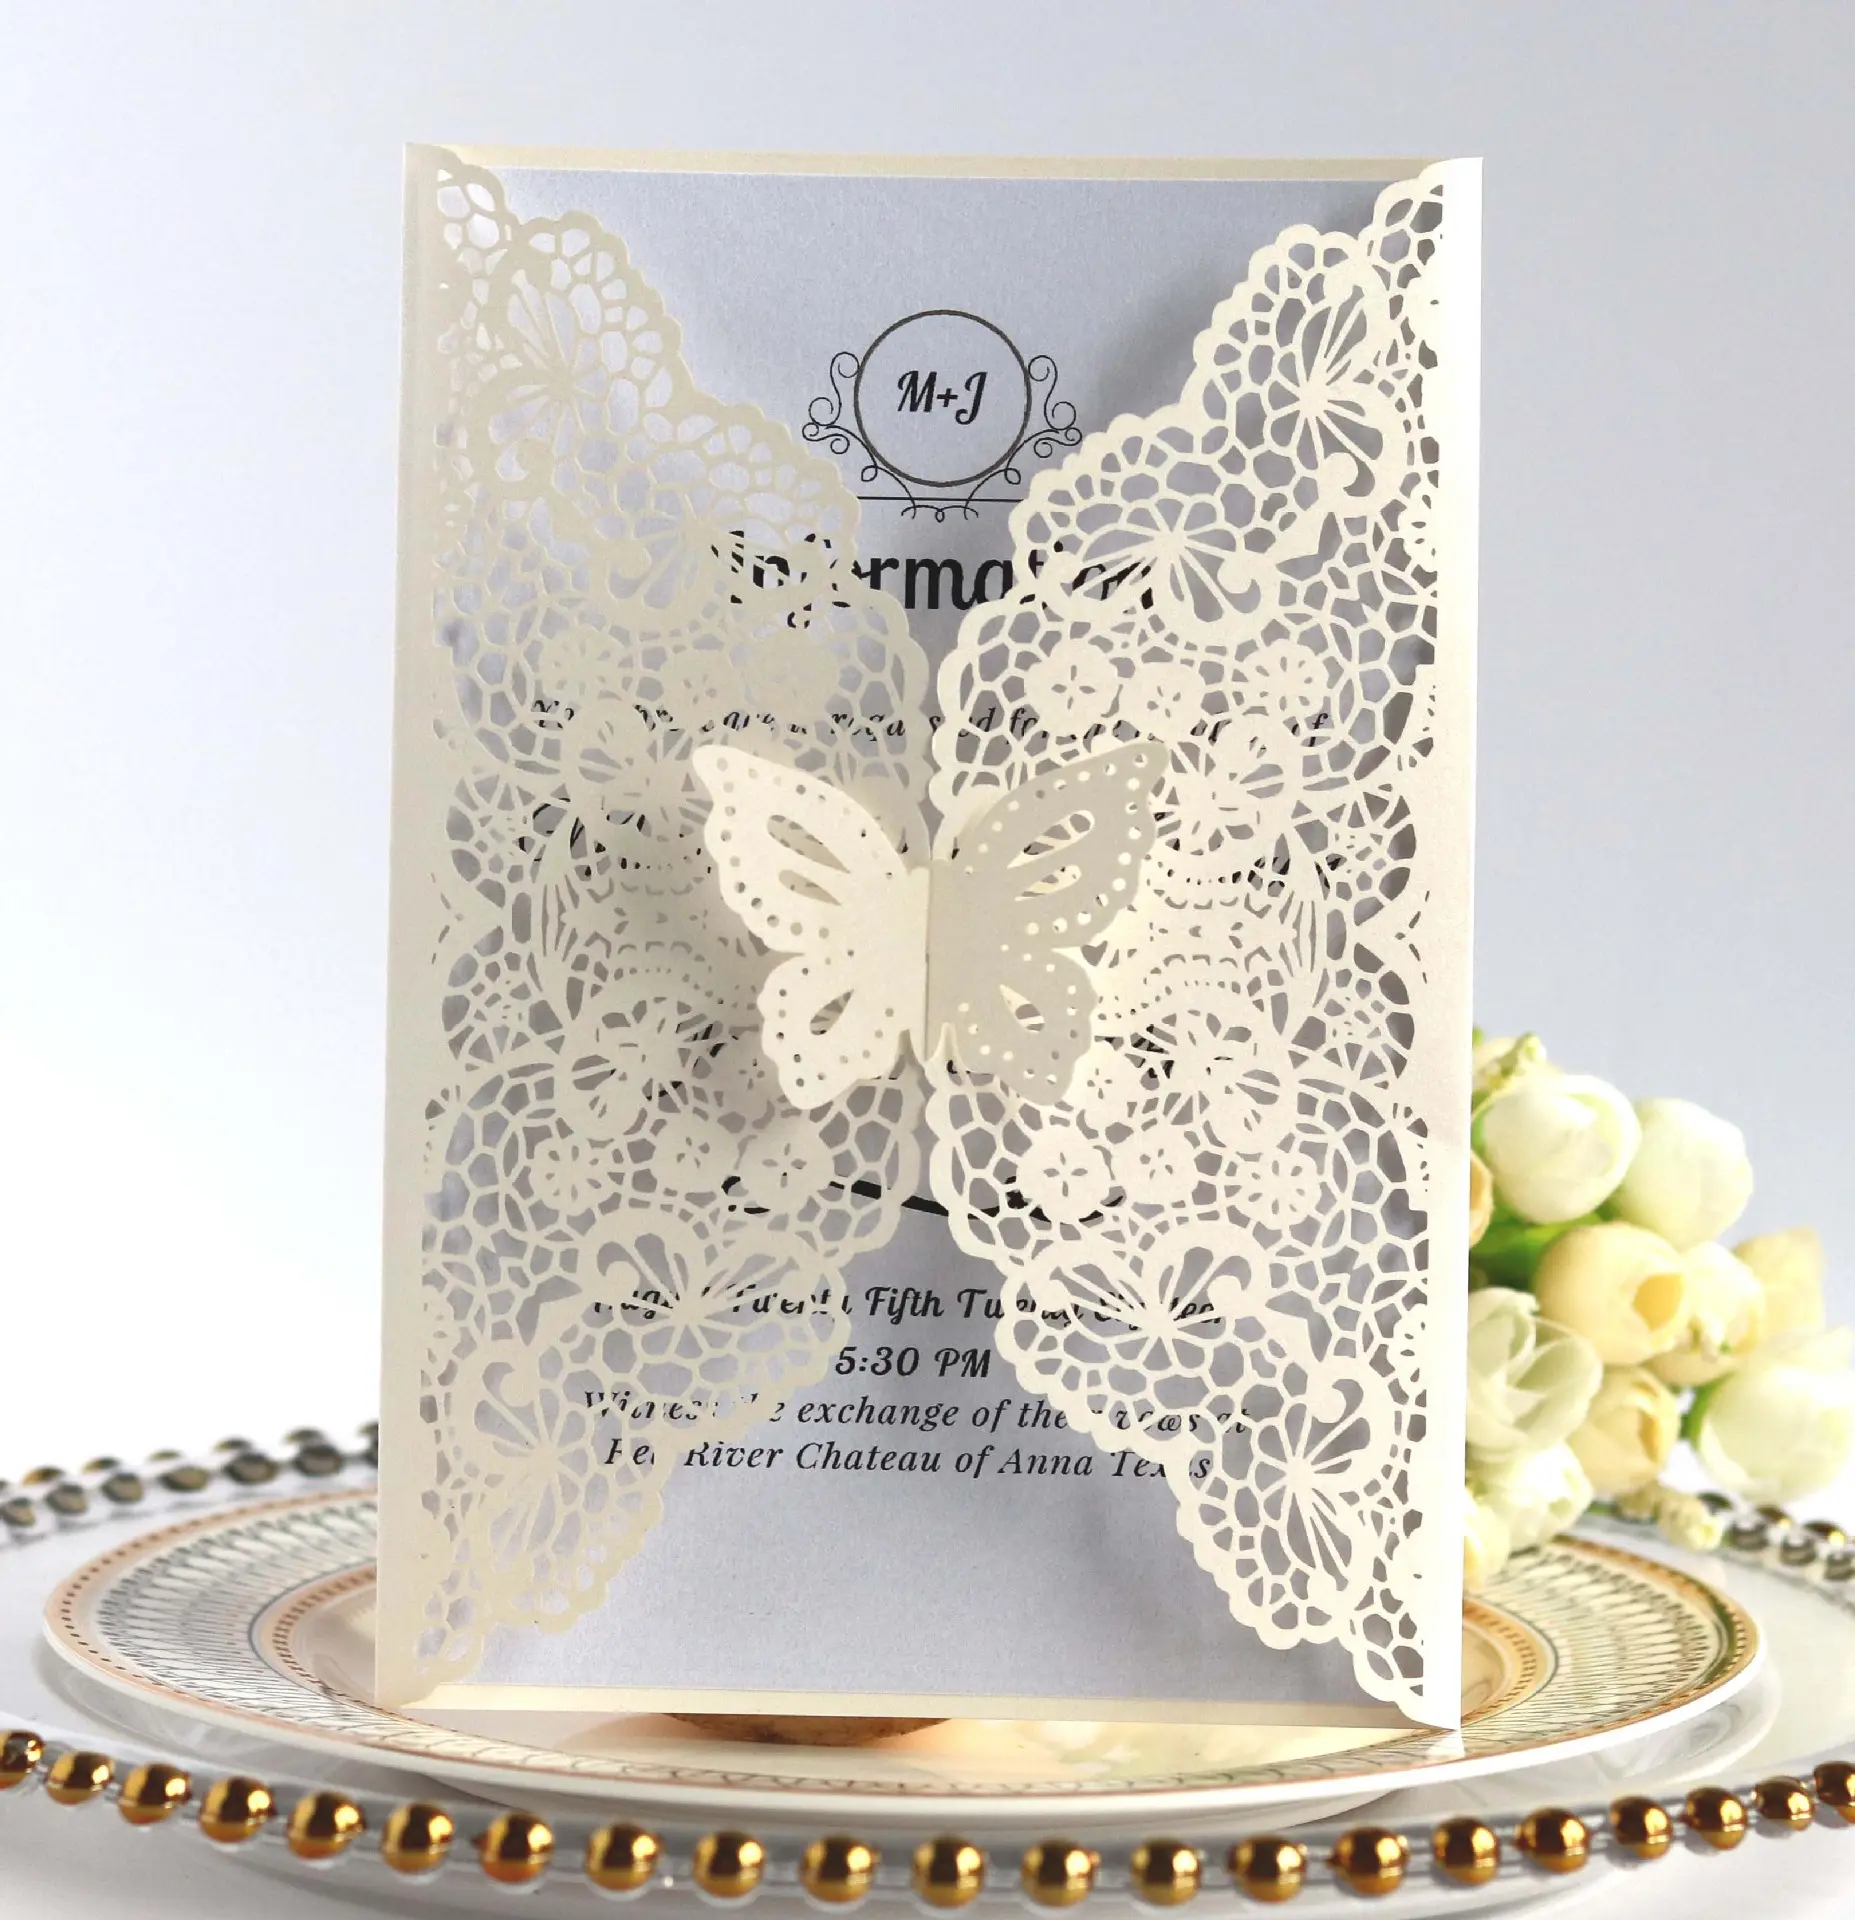 कस्टम लेजर कट तितली डिजाइन शादी के निमंत्रण में सफेद और पृष्ठ सुरुचिपूर्ण शादी के निमंत्रण कार्ड सफेद